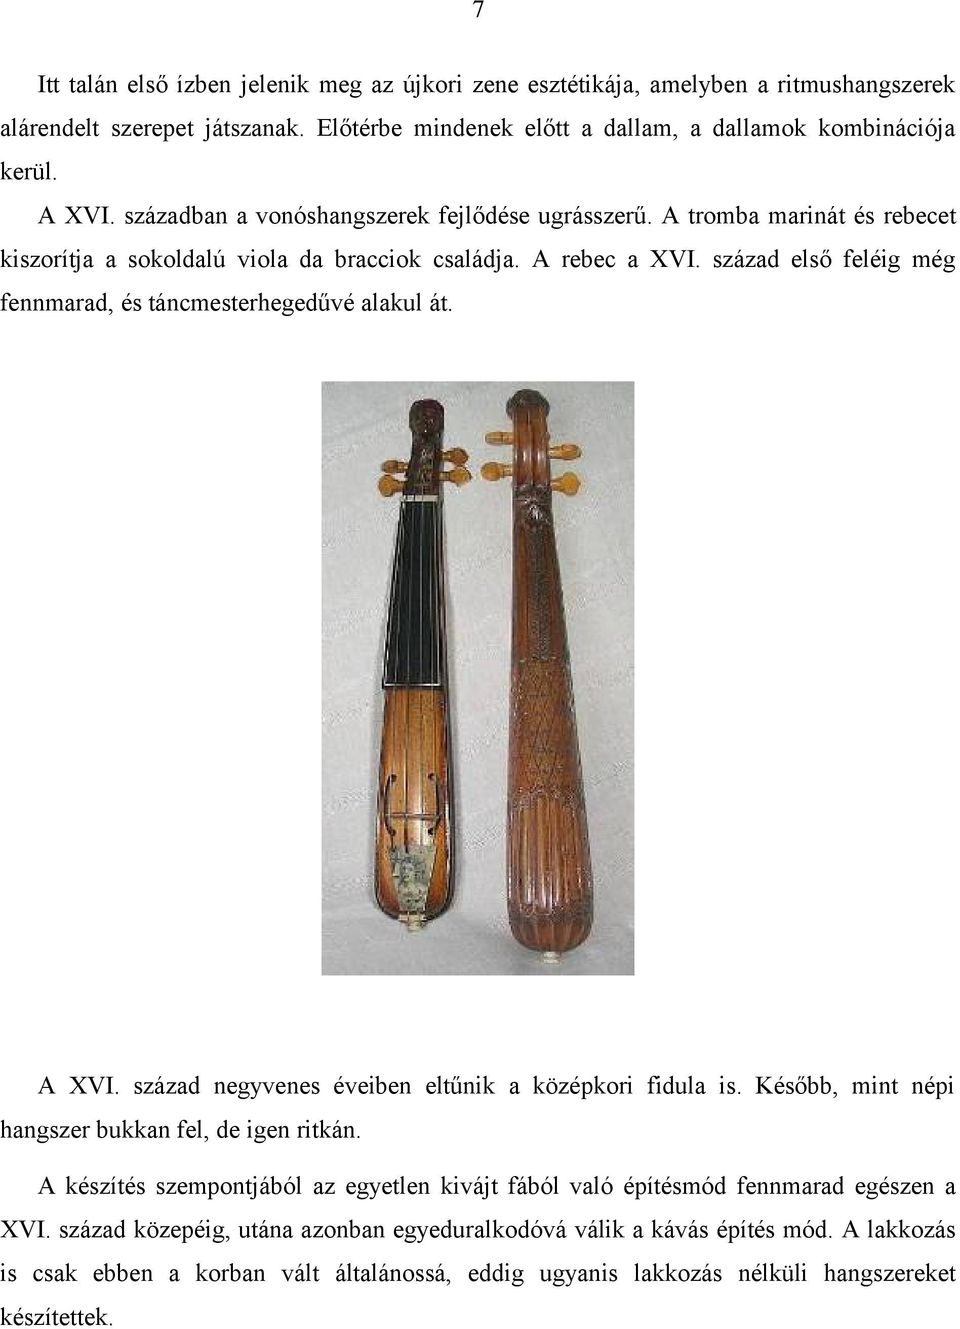 A vonós hangszerek kialakulásának története a XIV XX. századig.  Tartalomjegyzék - PDF Ingyenes letöltés